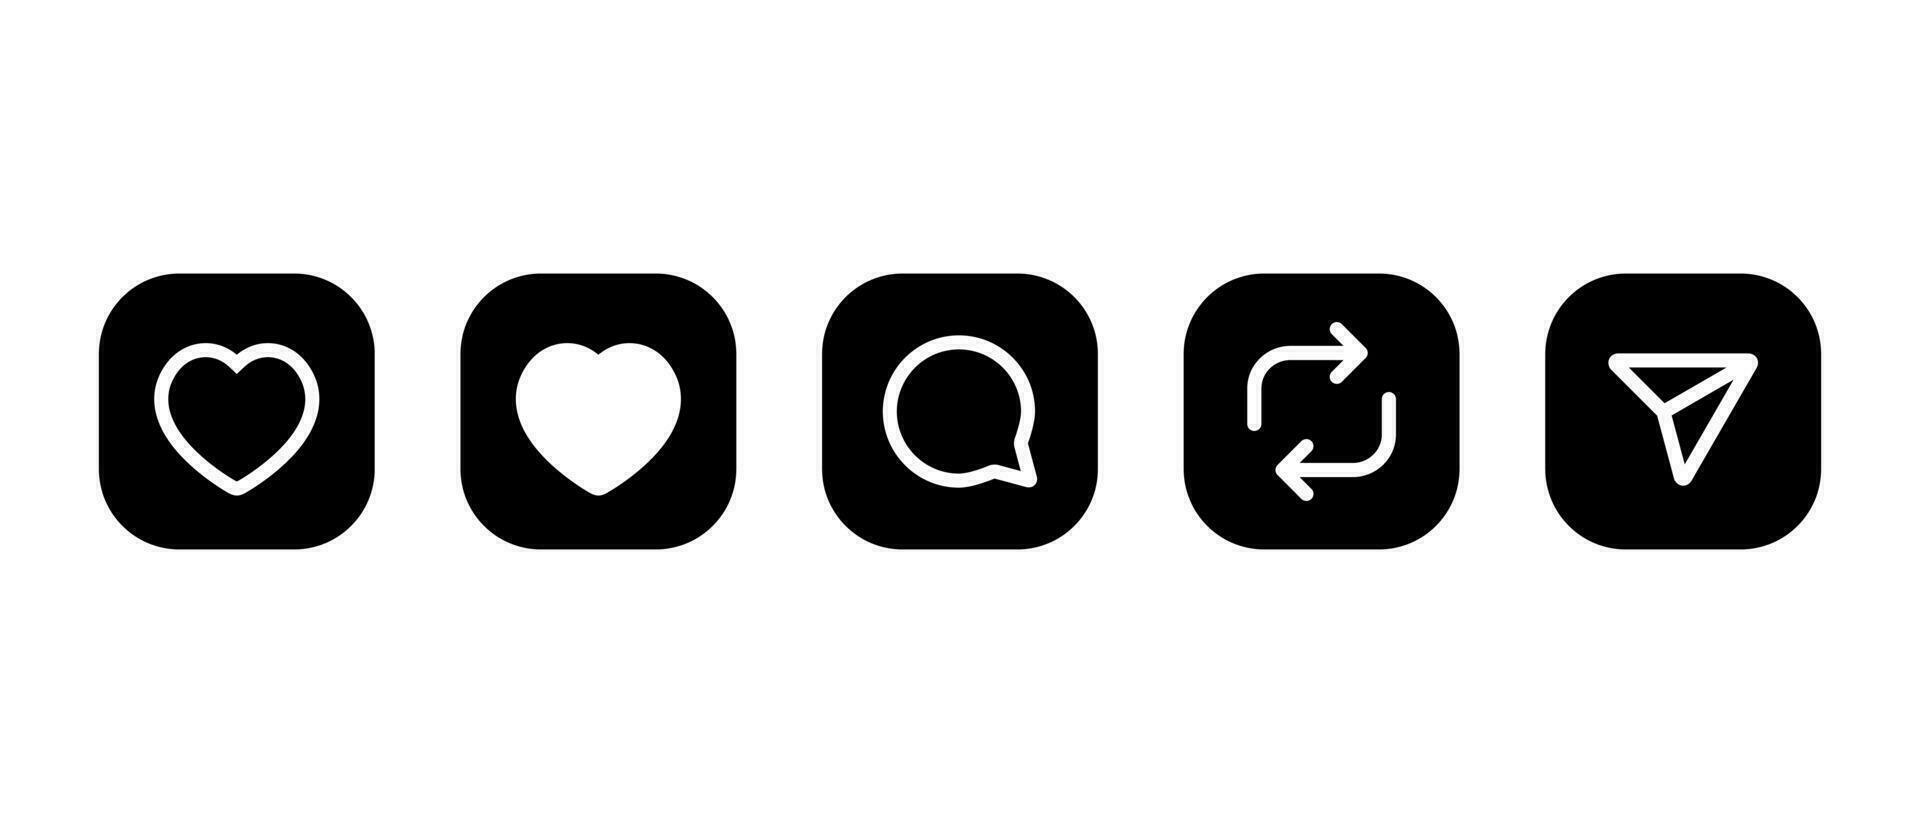 comme, commentaire, reposter, et partager icône vecteur dans carré Contexte. social médias éléments